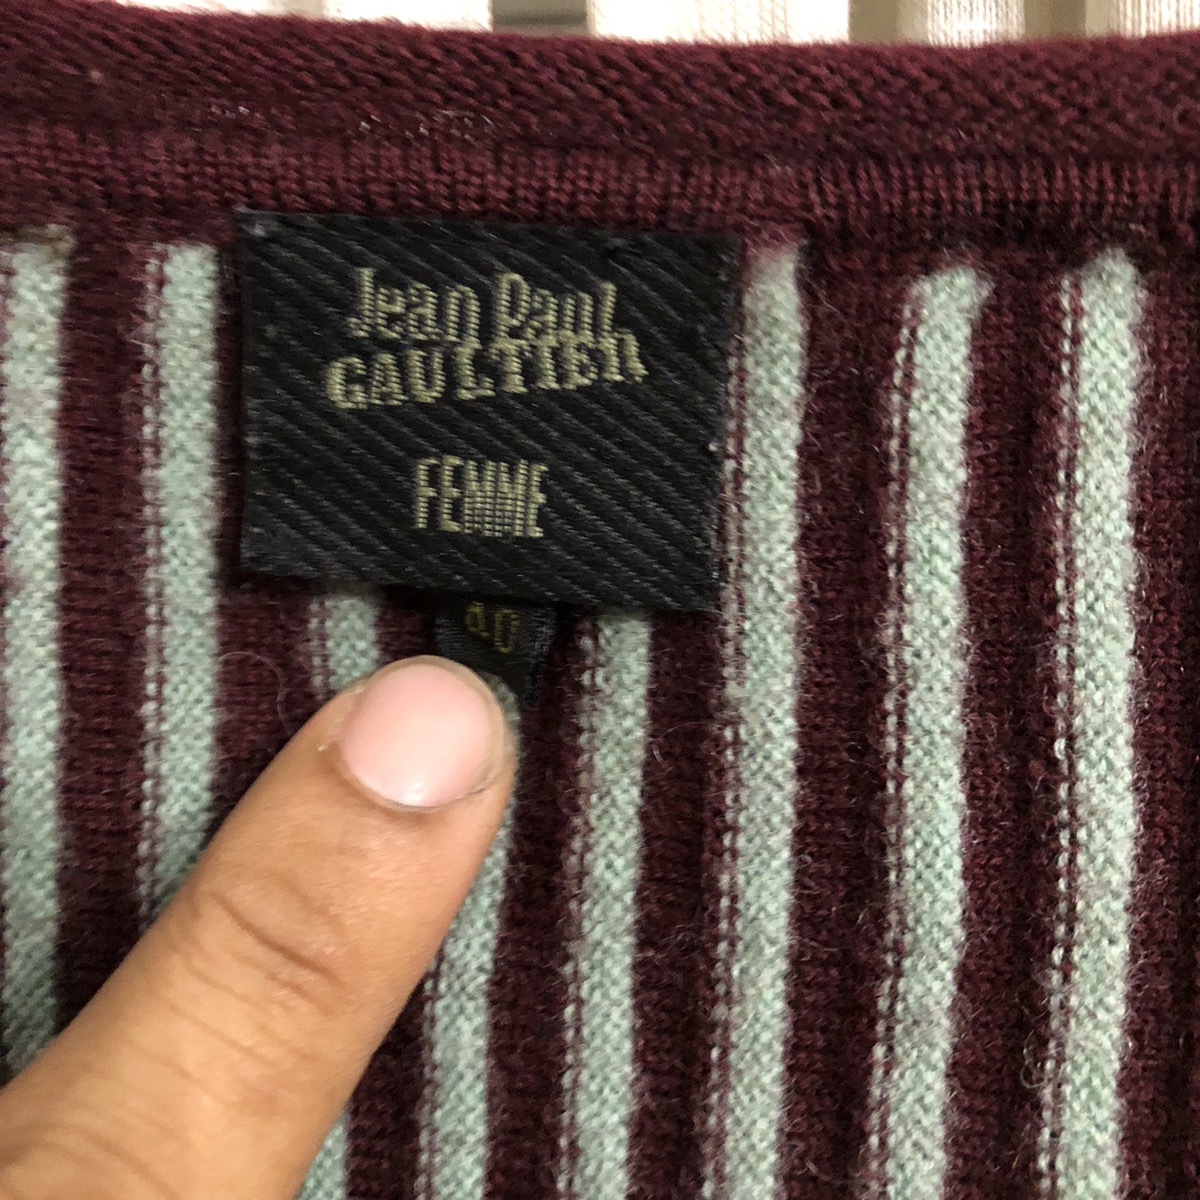 Jean paul gaultier zipper knit - 4